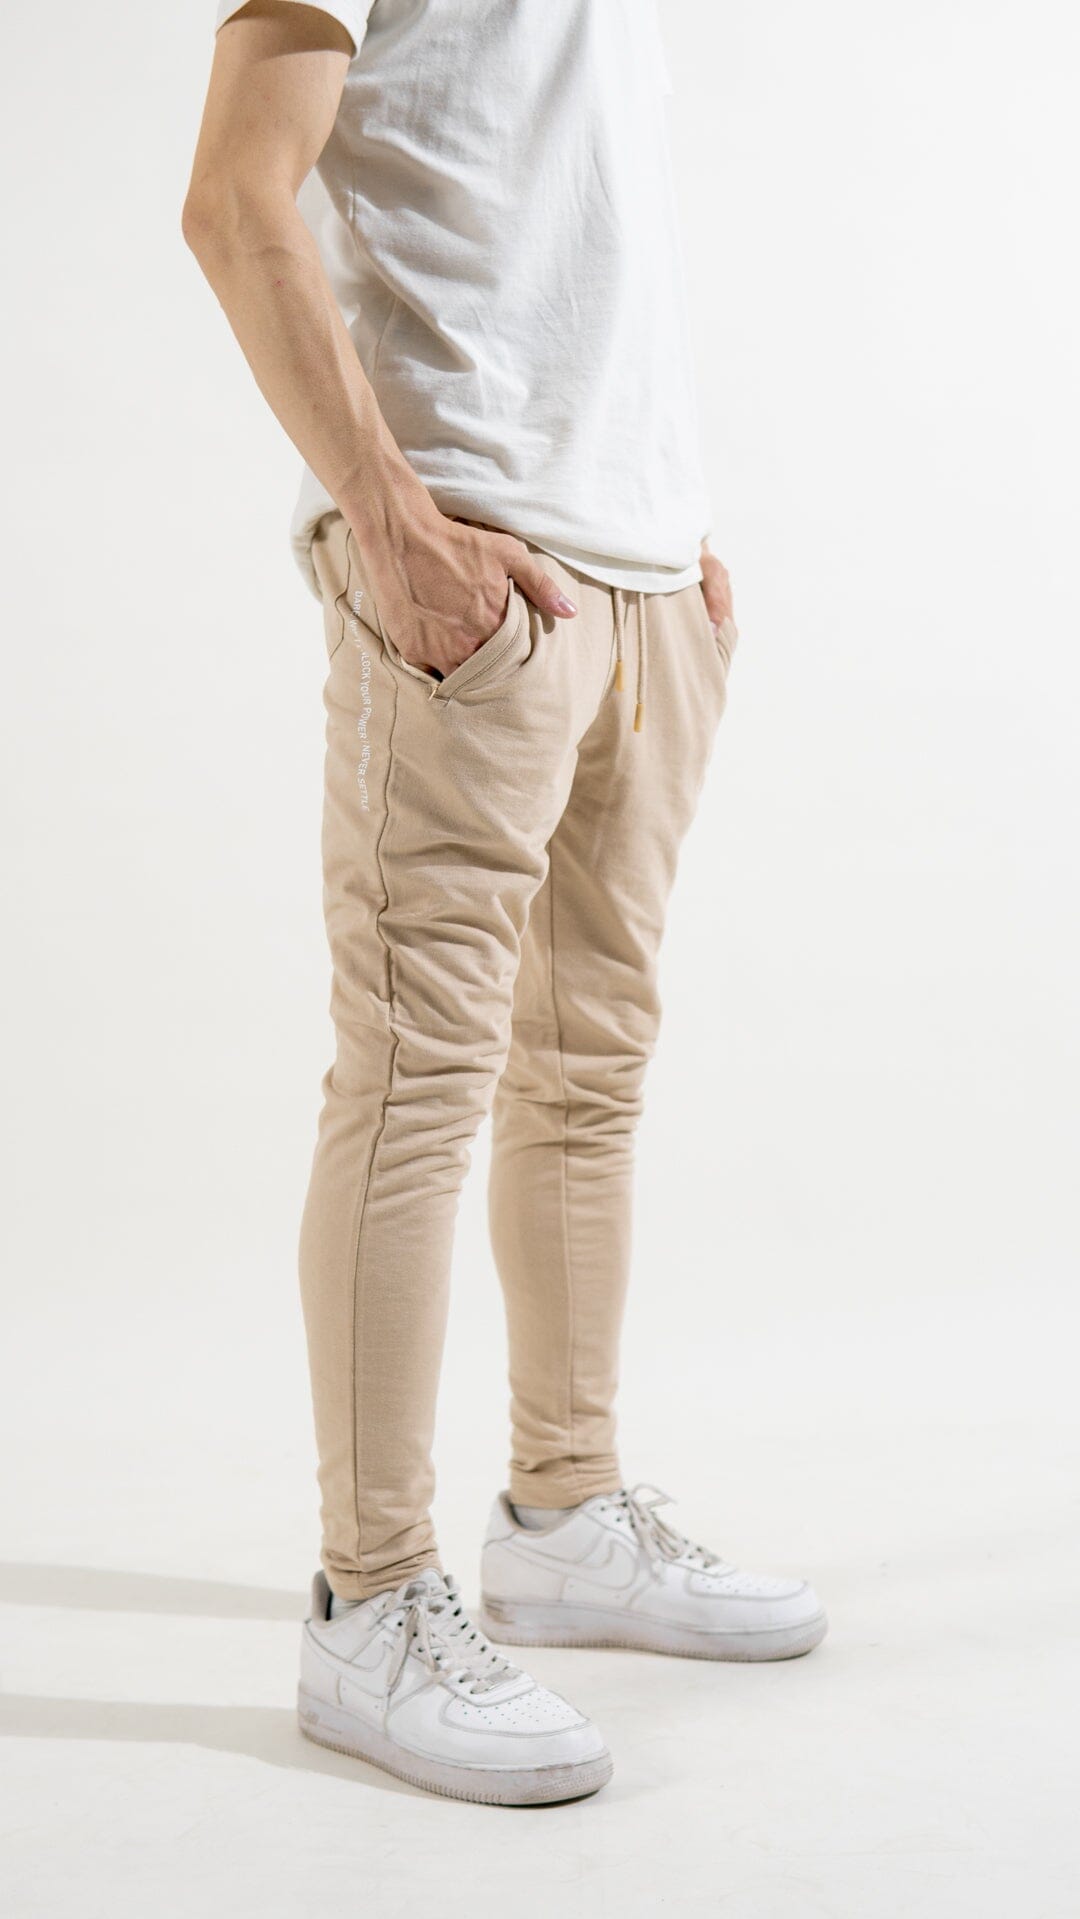 Polo Republica Men's Essentials Slim-Fit Joggers Men's Trousers Polo Republica Skin S 